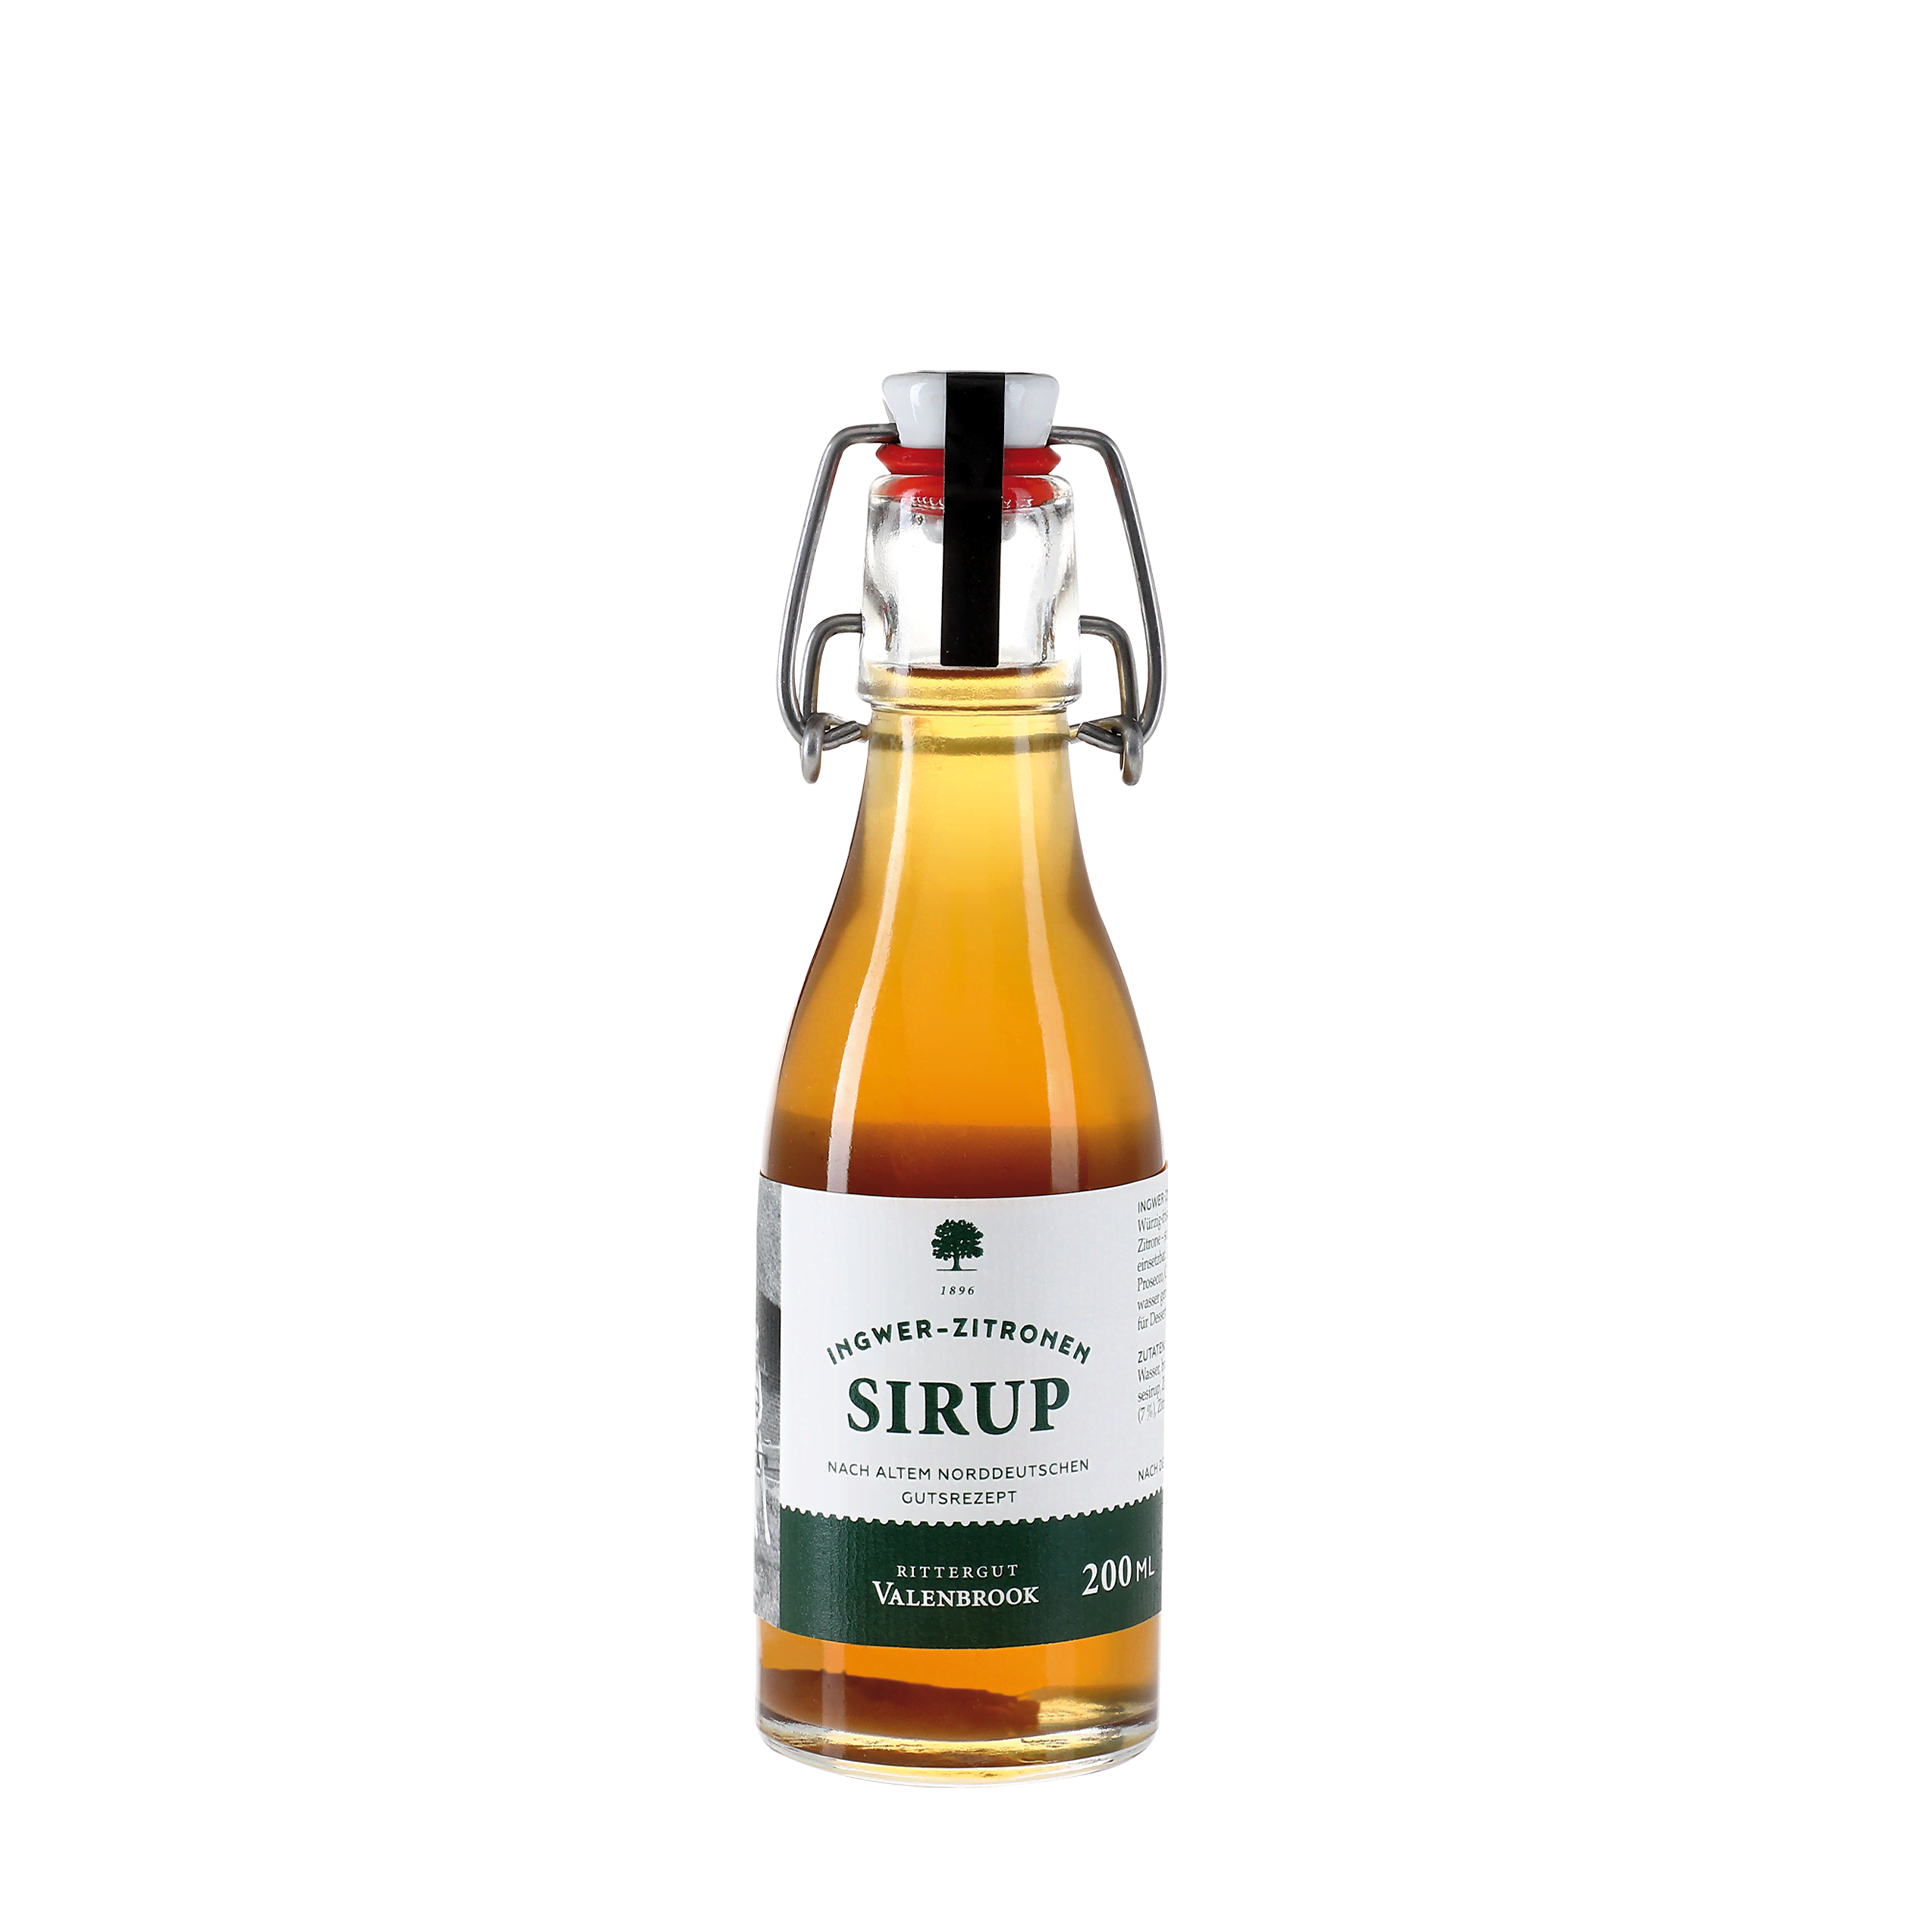 Ingwer-Zitronen Sirup - 200 ml Flasche